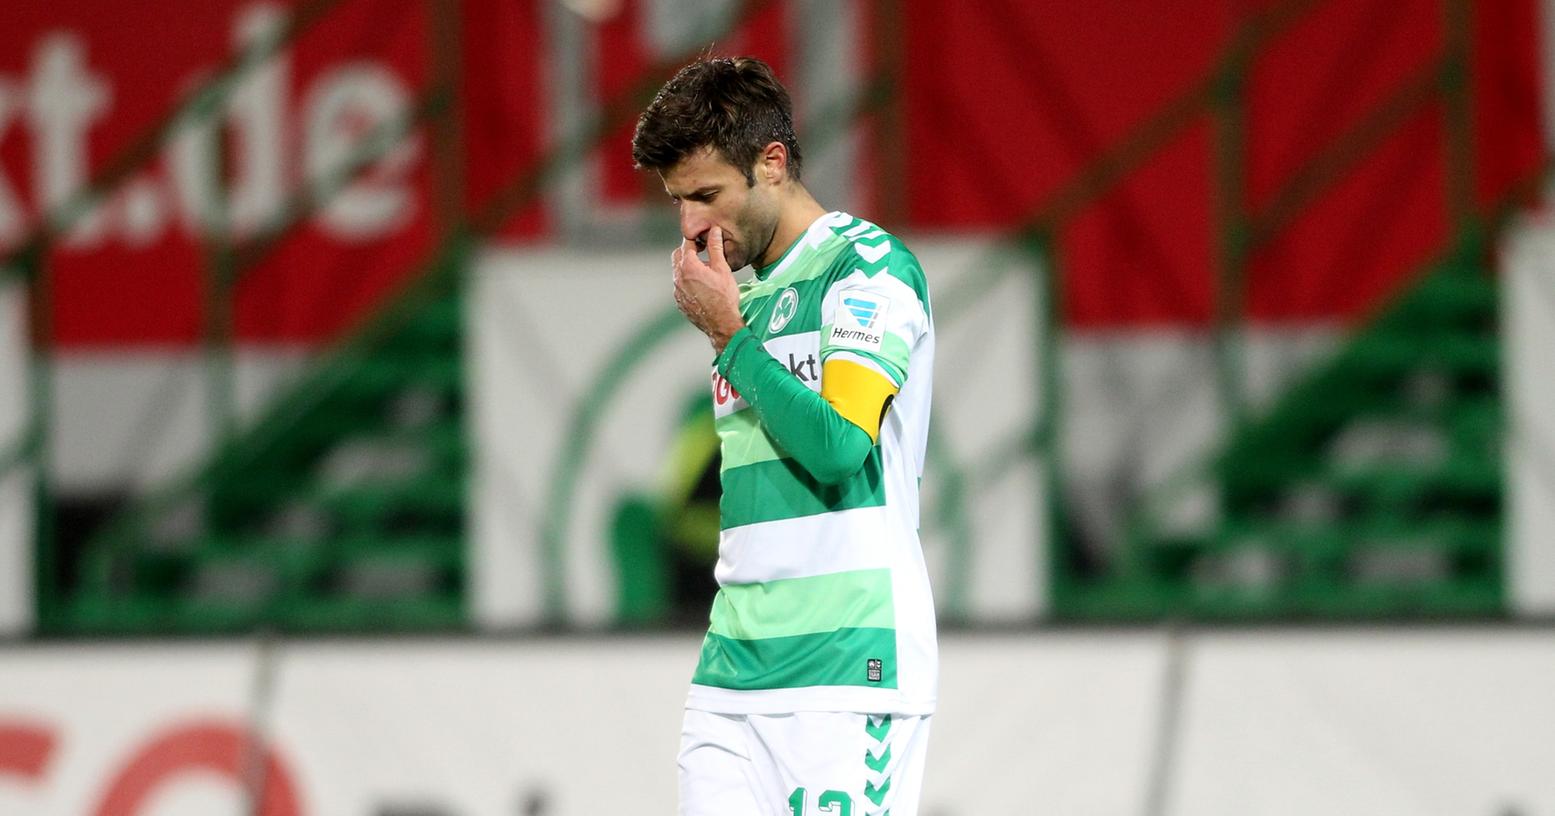 Trauriger Kapitän: Marco Caliguiri trottet nach dem 2:4 gegen Kaiserslautern enttäuscht über den Platz.